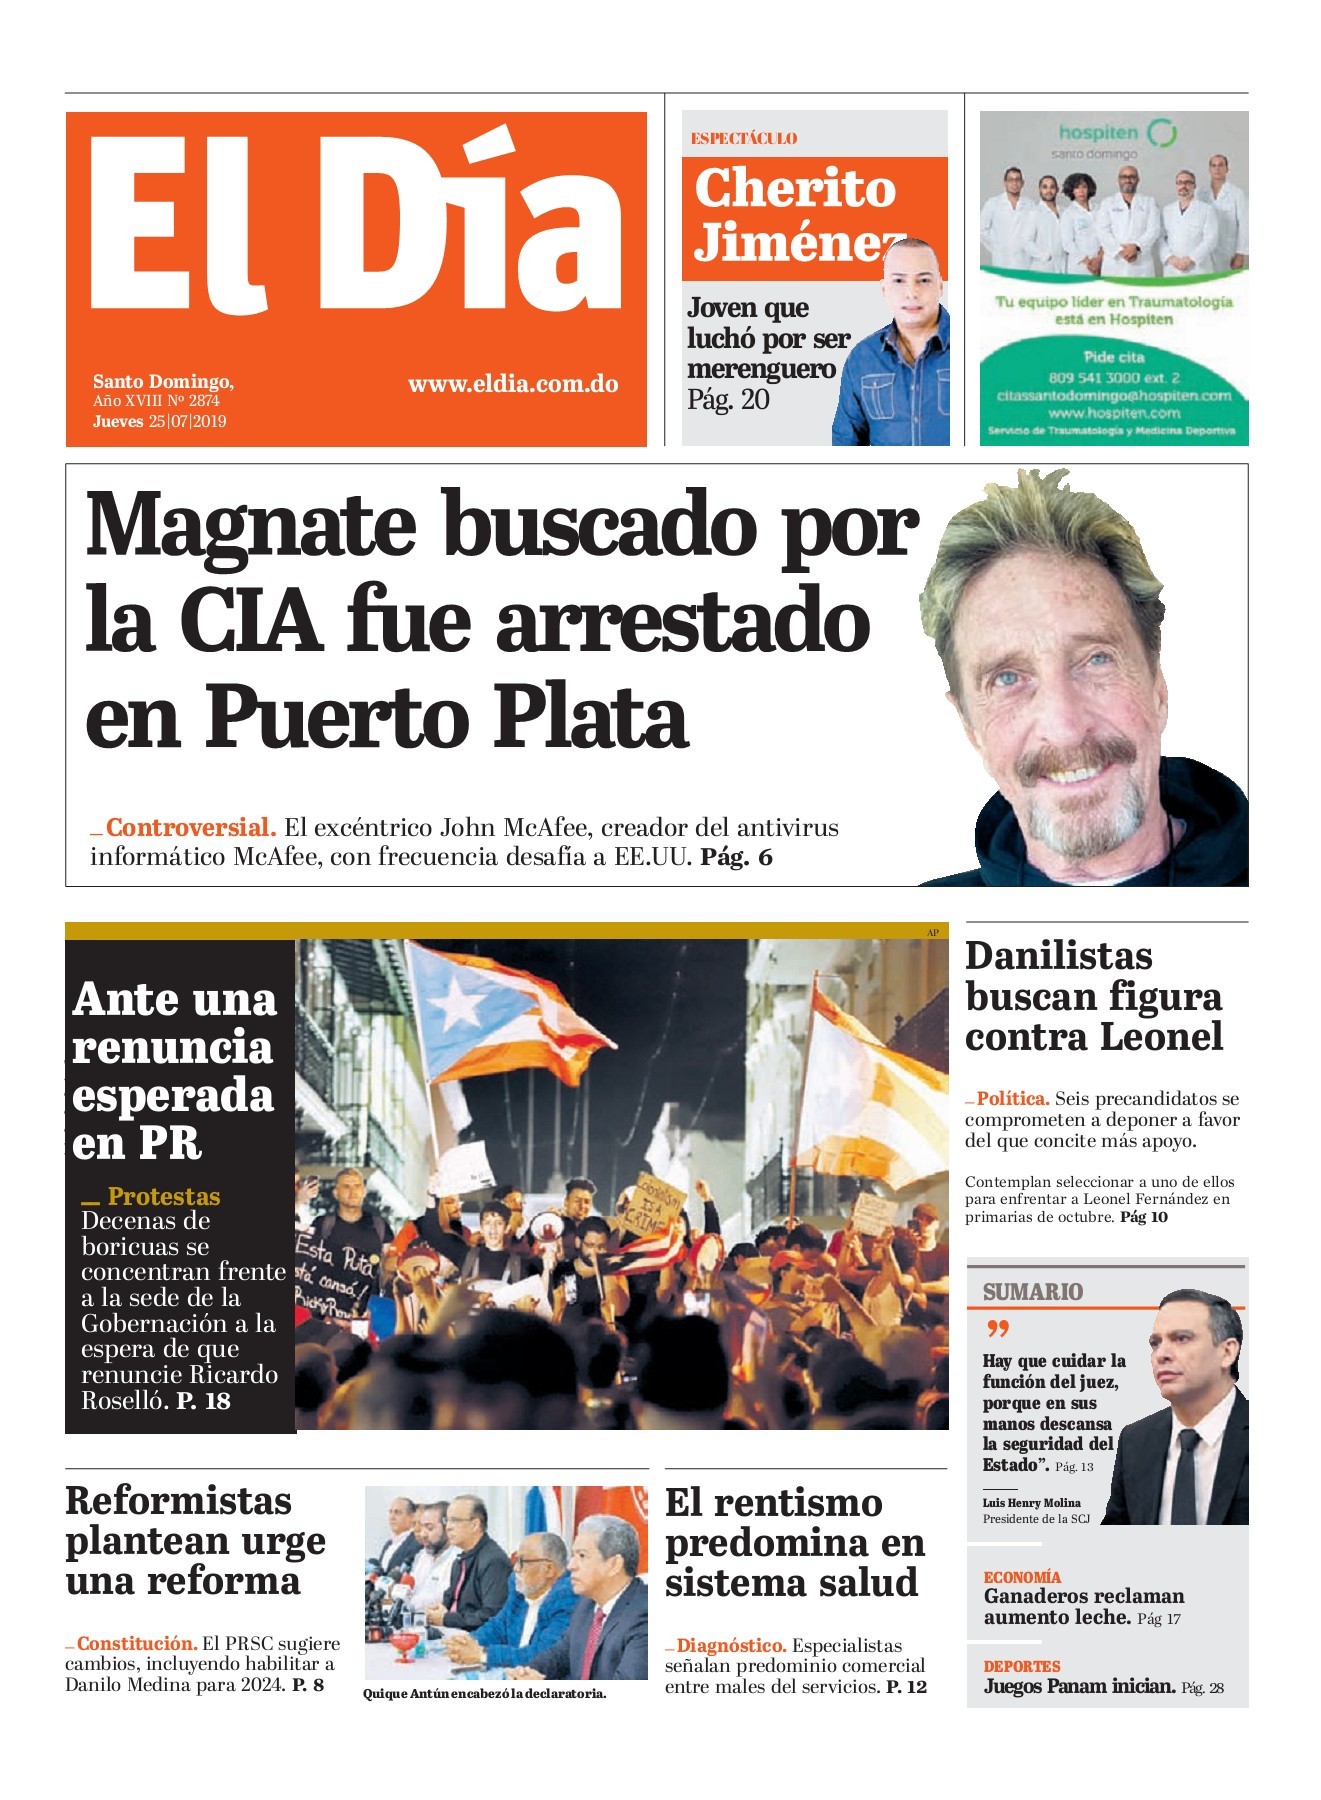 Portada Periódico El Día, Jueves 25 de Julio, 2019